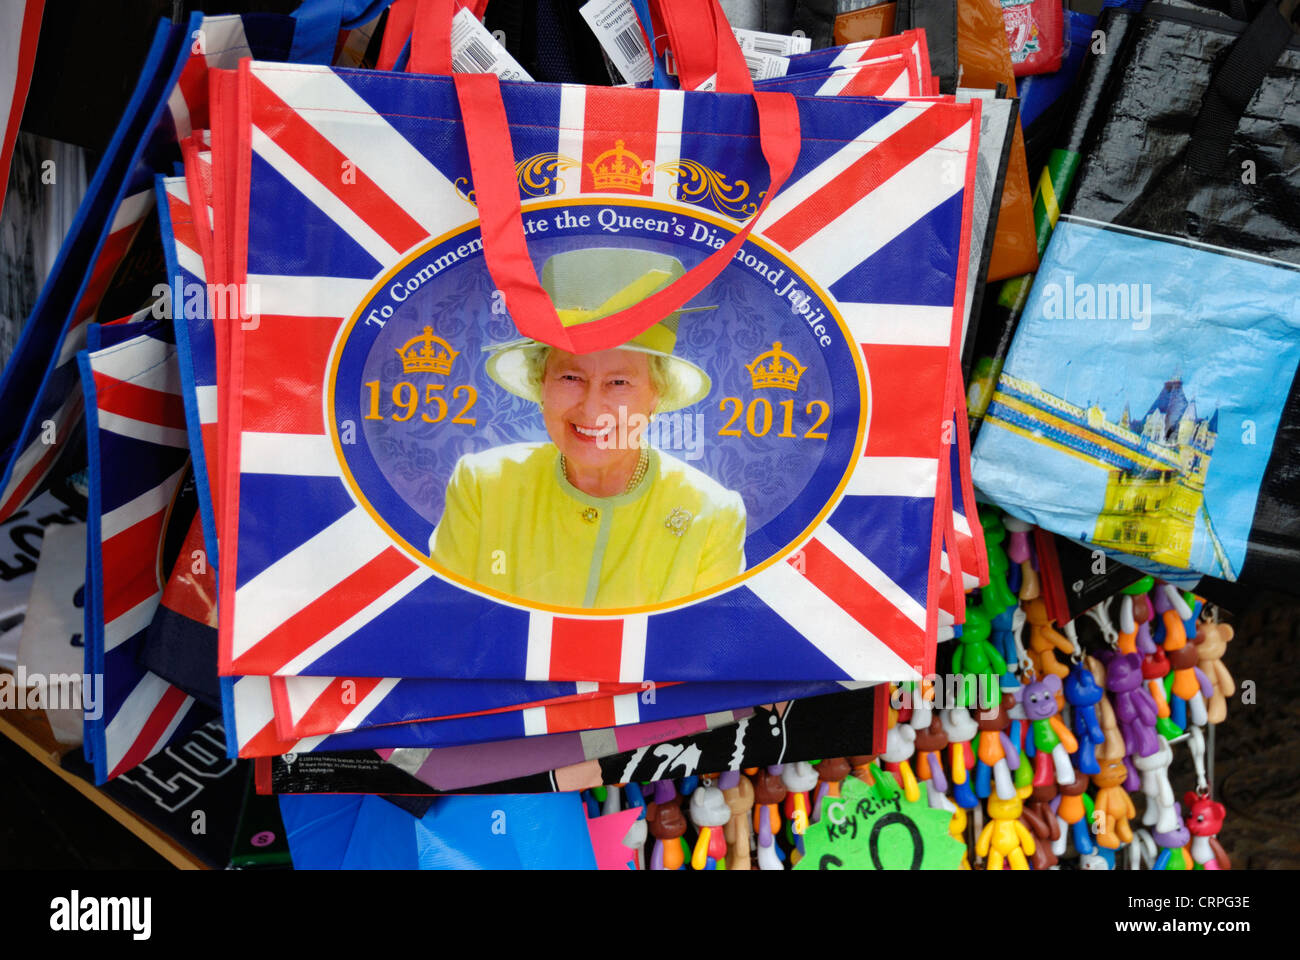 Eine Einkaufstasche mit Anschluß-Markierungsfahne und Bild von Königin Elizabeth ll in der Feier der ihr diamantenes Jubiläum im Jahr 2012. Stockfoto